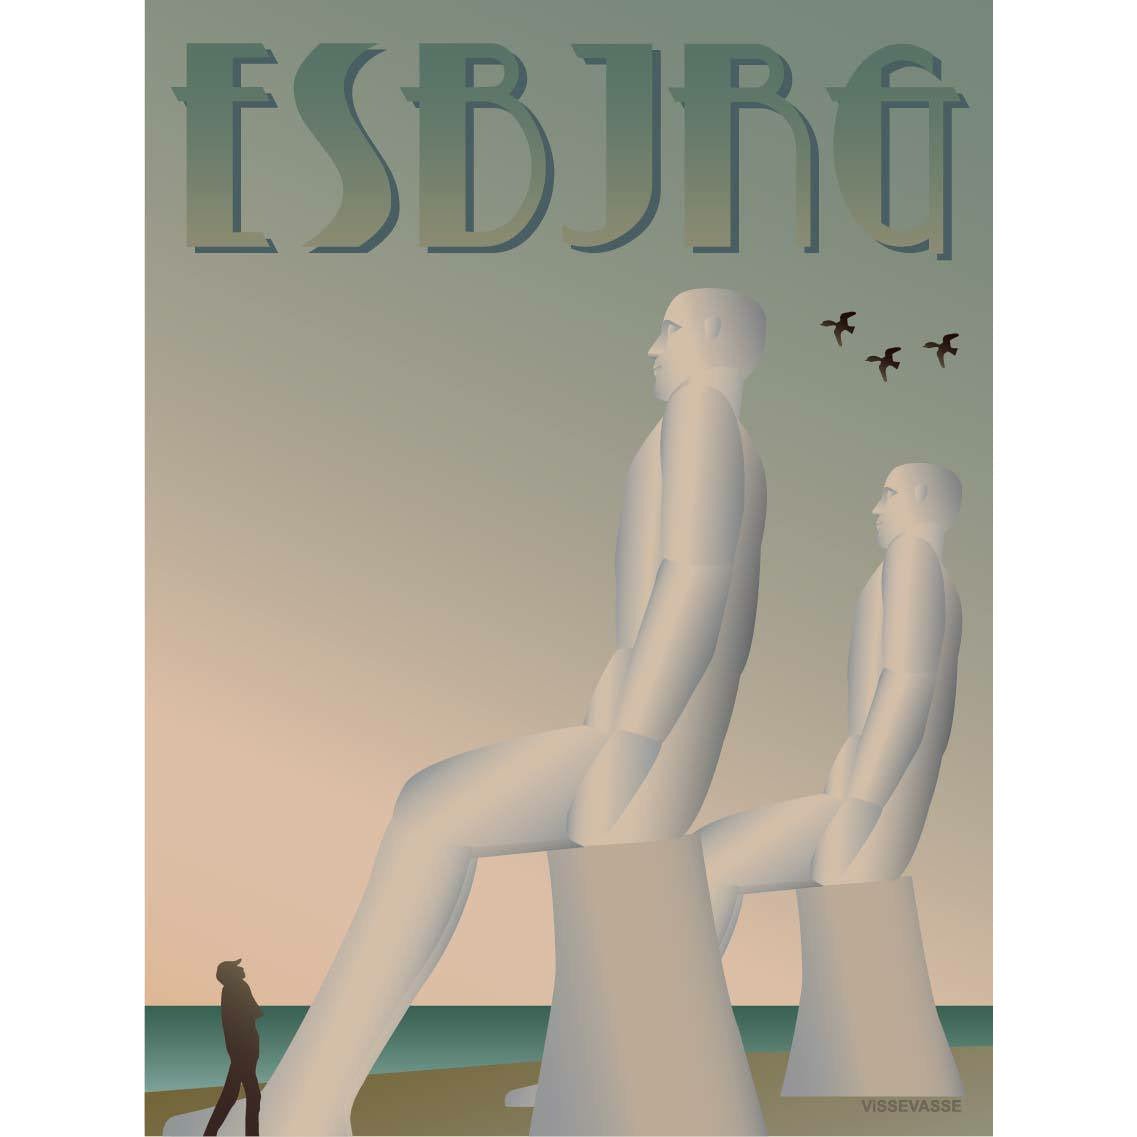 Vissevasse Esbjerg White Men Poster, 70 X100 Cm